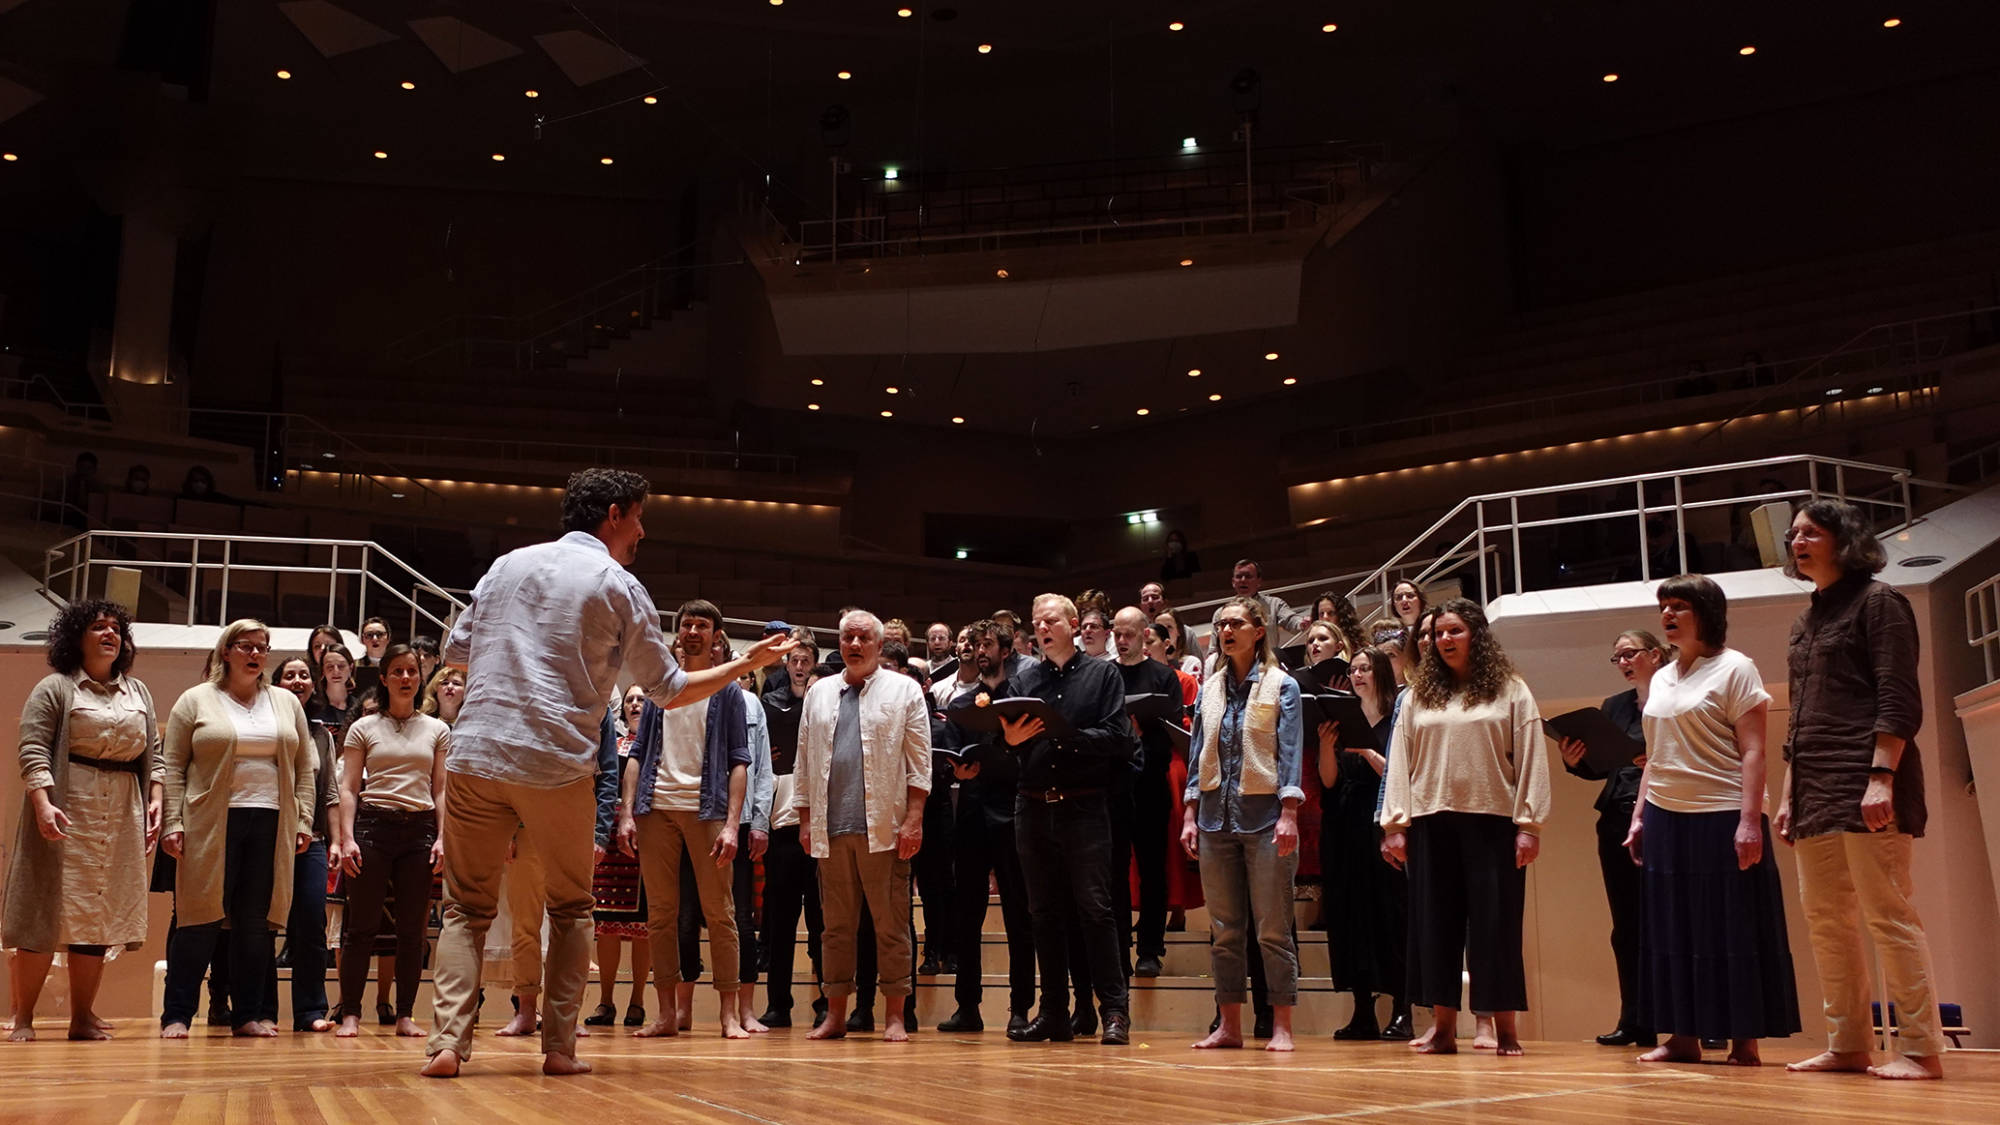 acapella Chor tonraumfünf10 gemeinsam mit den Chören BulCanto und Coro Contrapunto bei der Sonntagskonzertreihe im Kammermusiksaal der Berliner Philharmonie